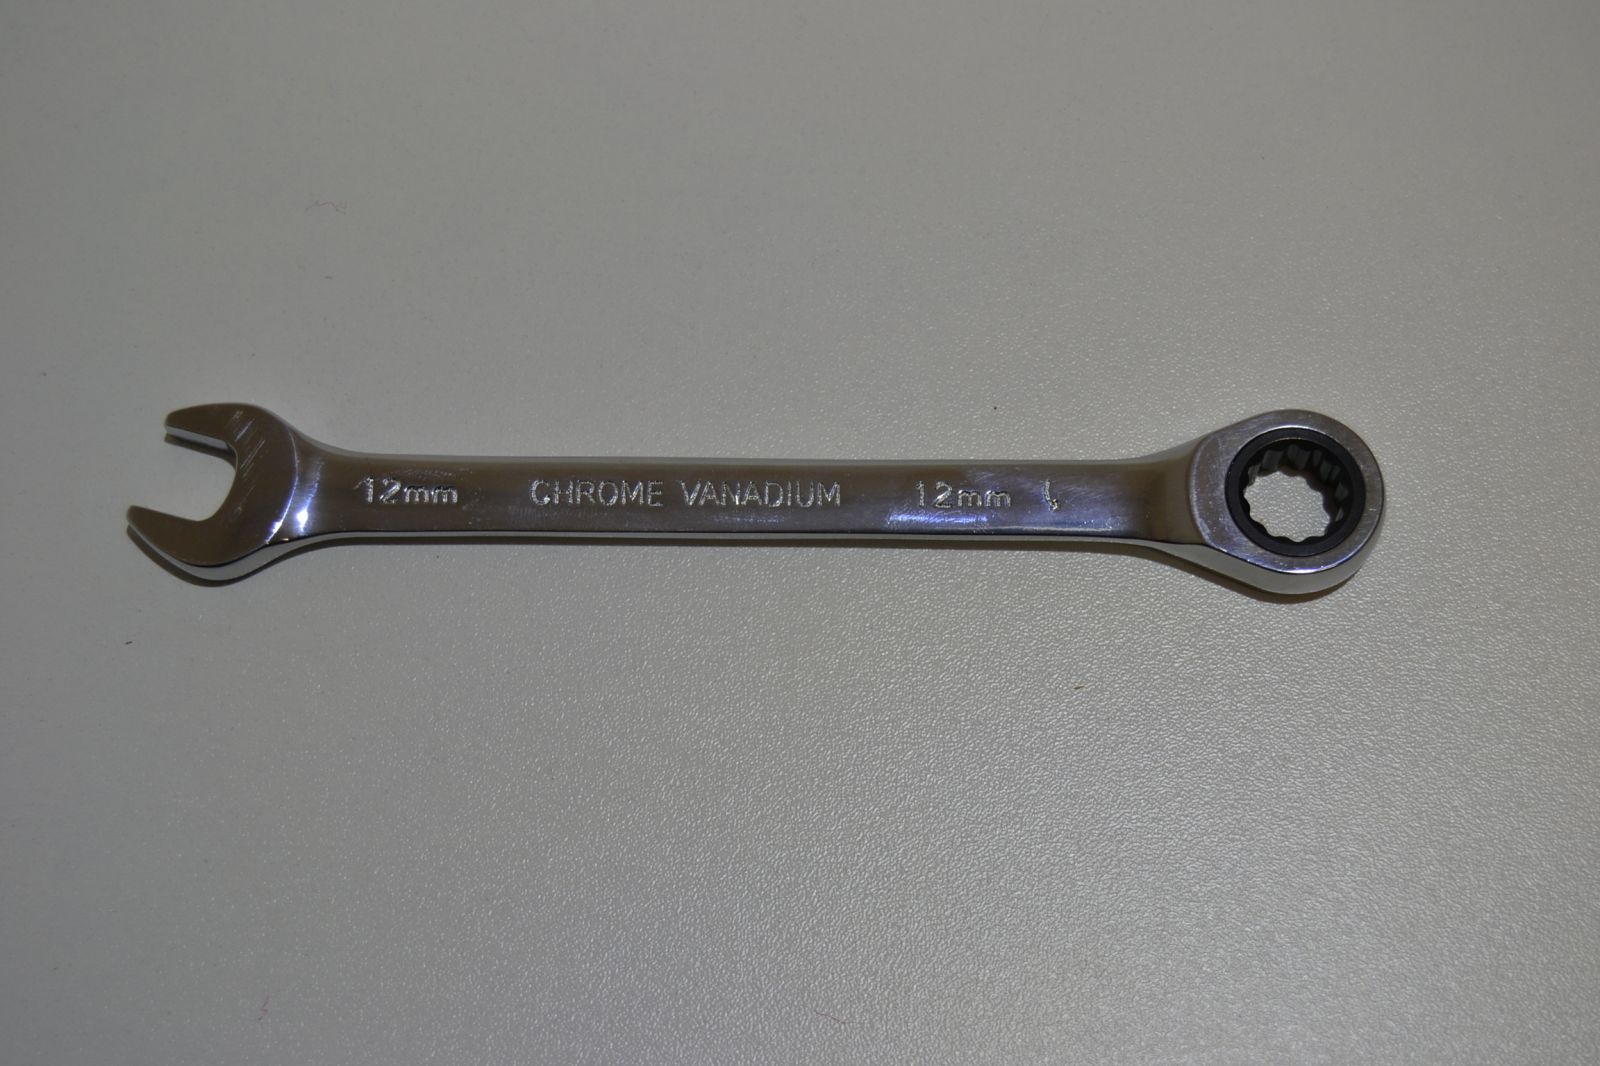 Plochý ráčnový klíč 12mm, ráčna - chrom vanad PRC